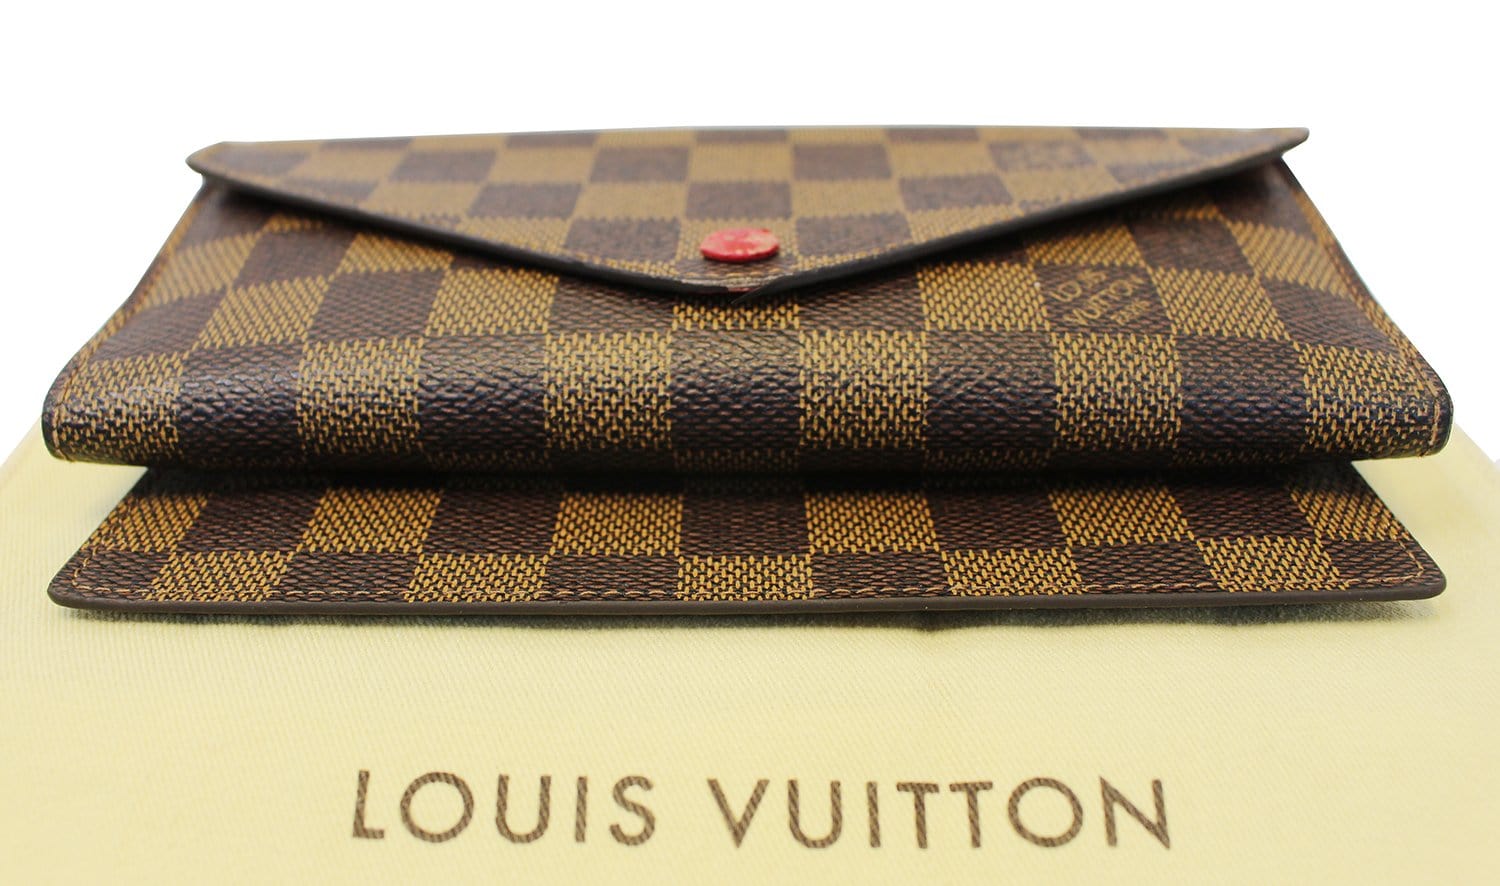 Louis Vuitton Josephine Wallet Damier Ebene Canvas Gold Hot Stamp Red  Lining #LV #LouisVuitton #HotStamp #damierebene